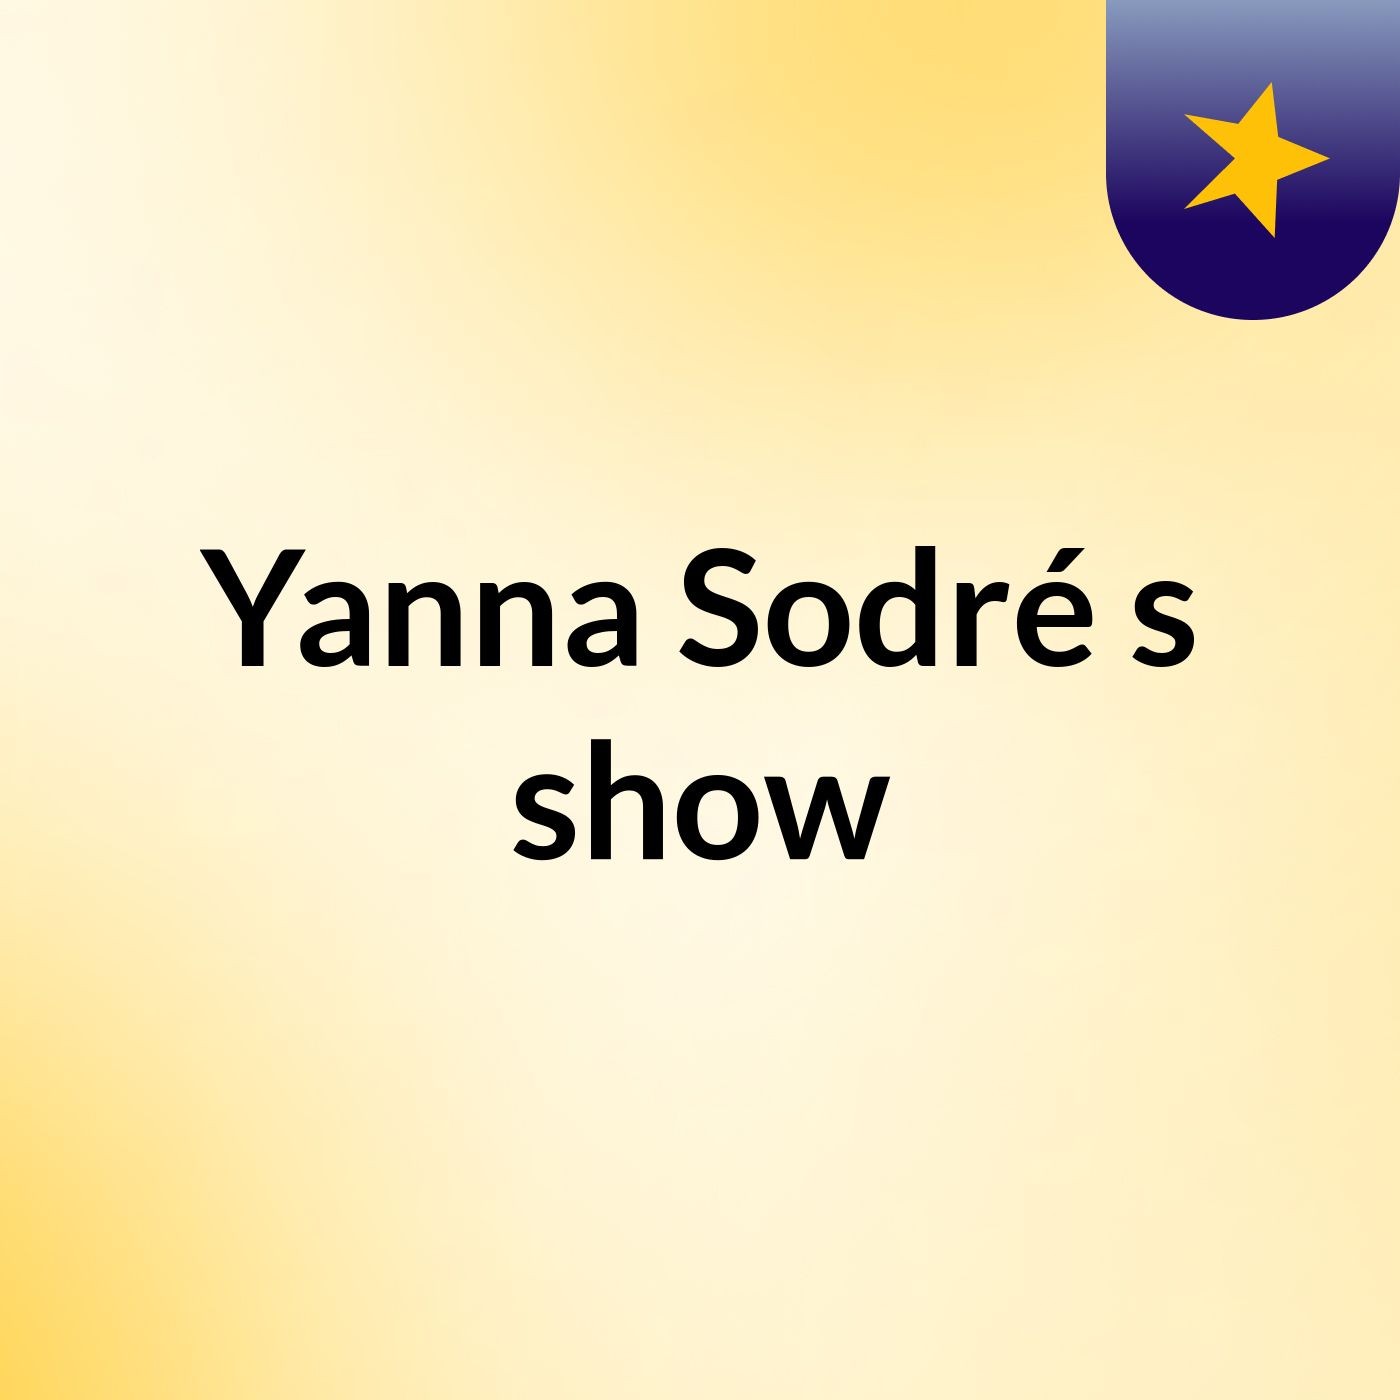 Yanna Sodré's show